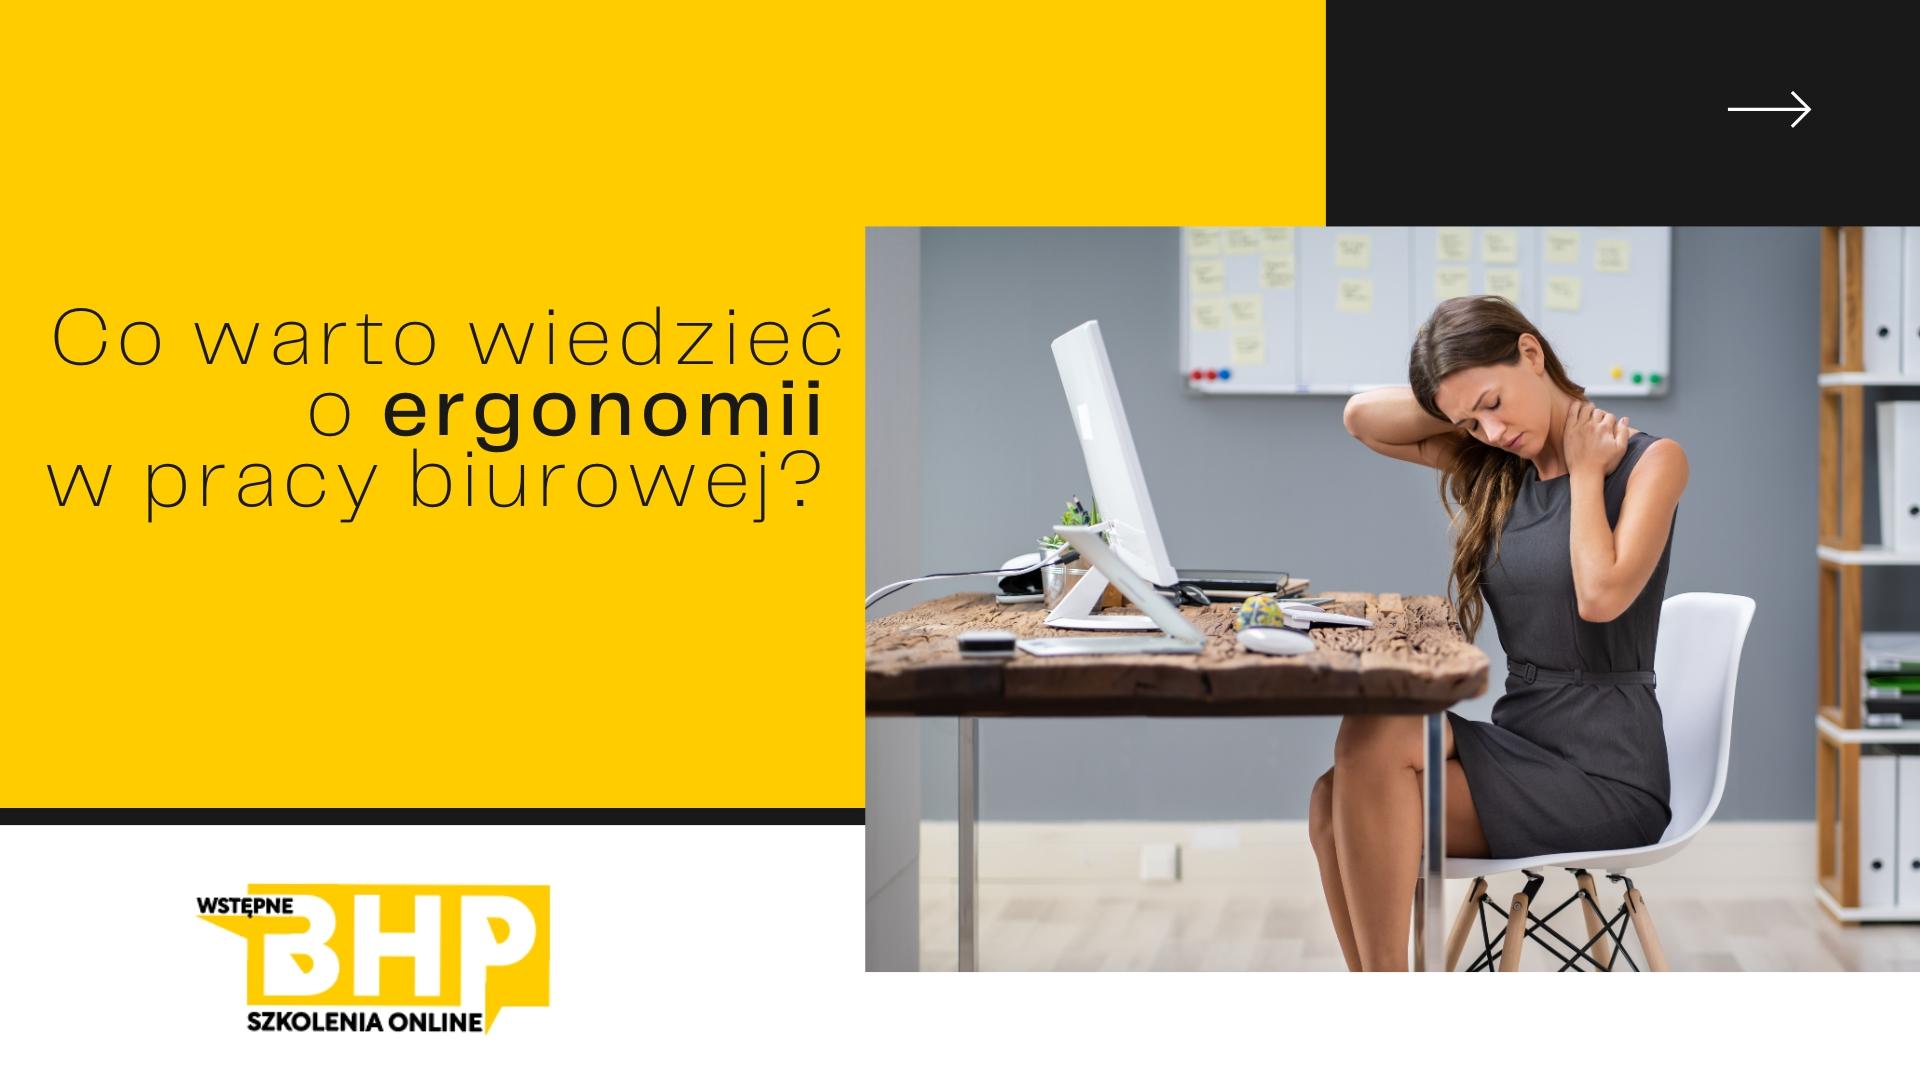 Co warto wiedzieć o ergonomii w pracy biurowej?